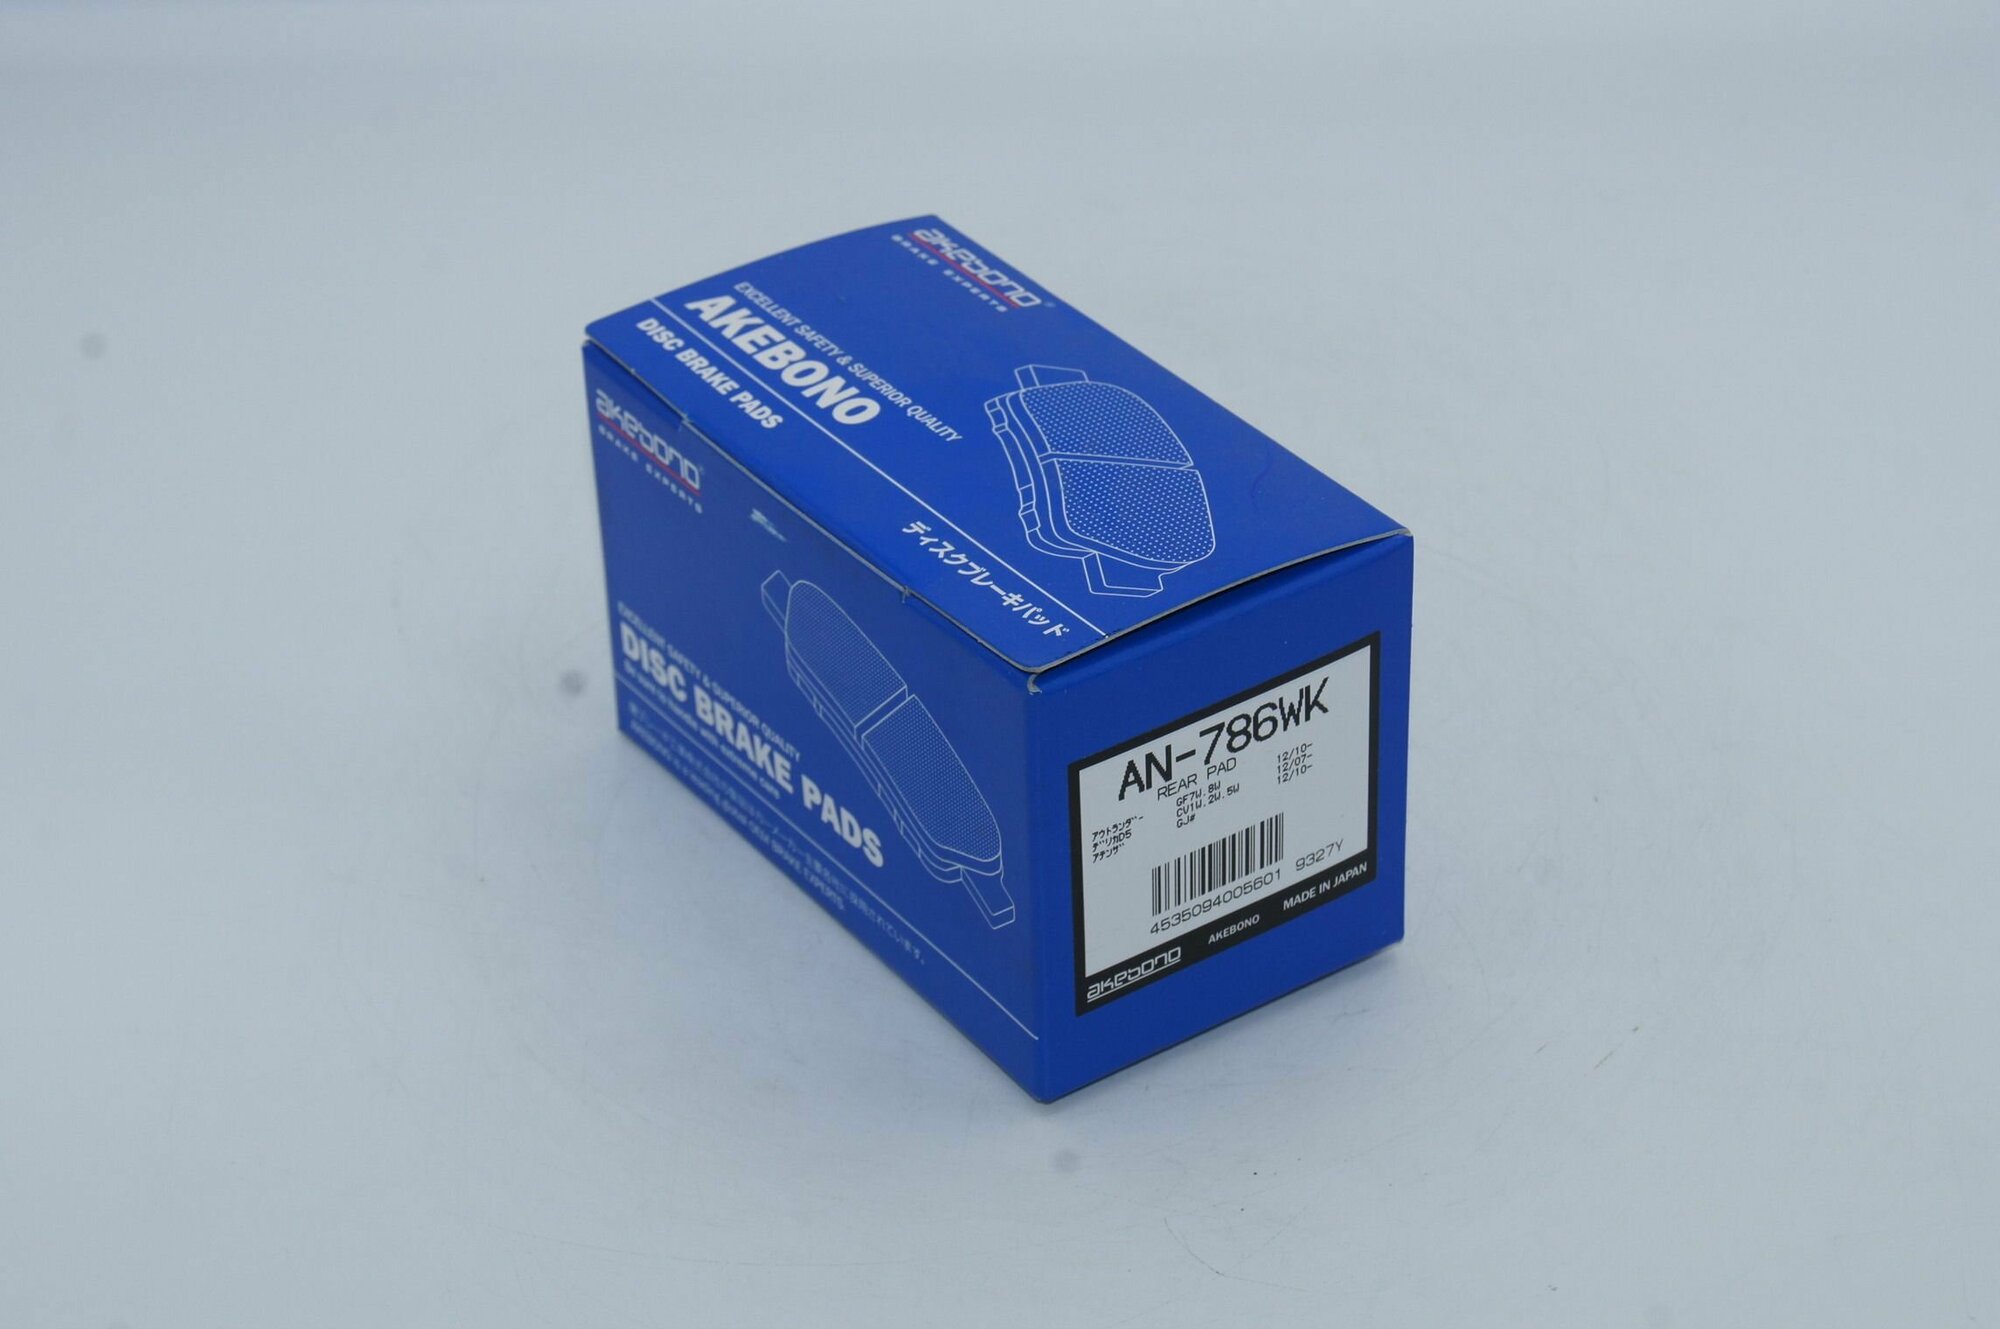 Колодки тормозные дисковые задние (производитель AKEBONO, артикул AN786WK)